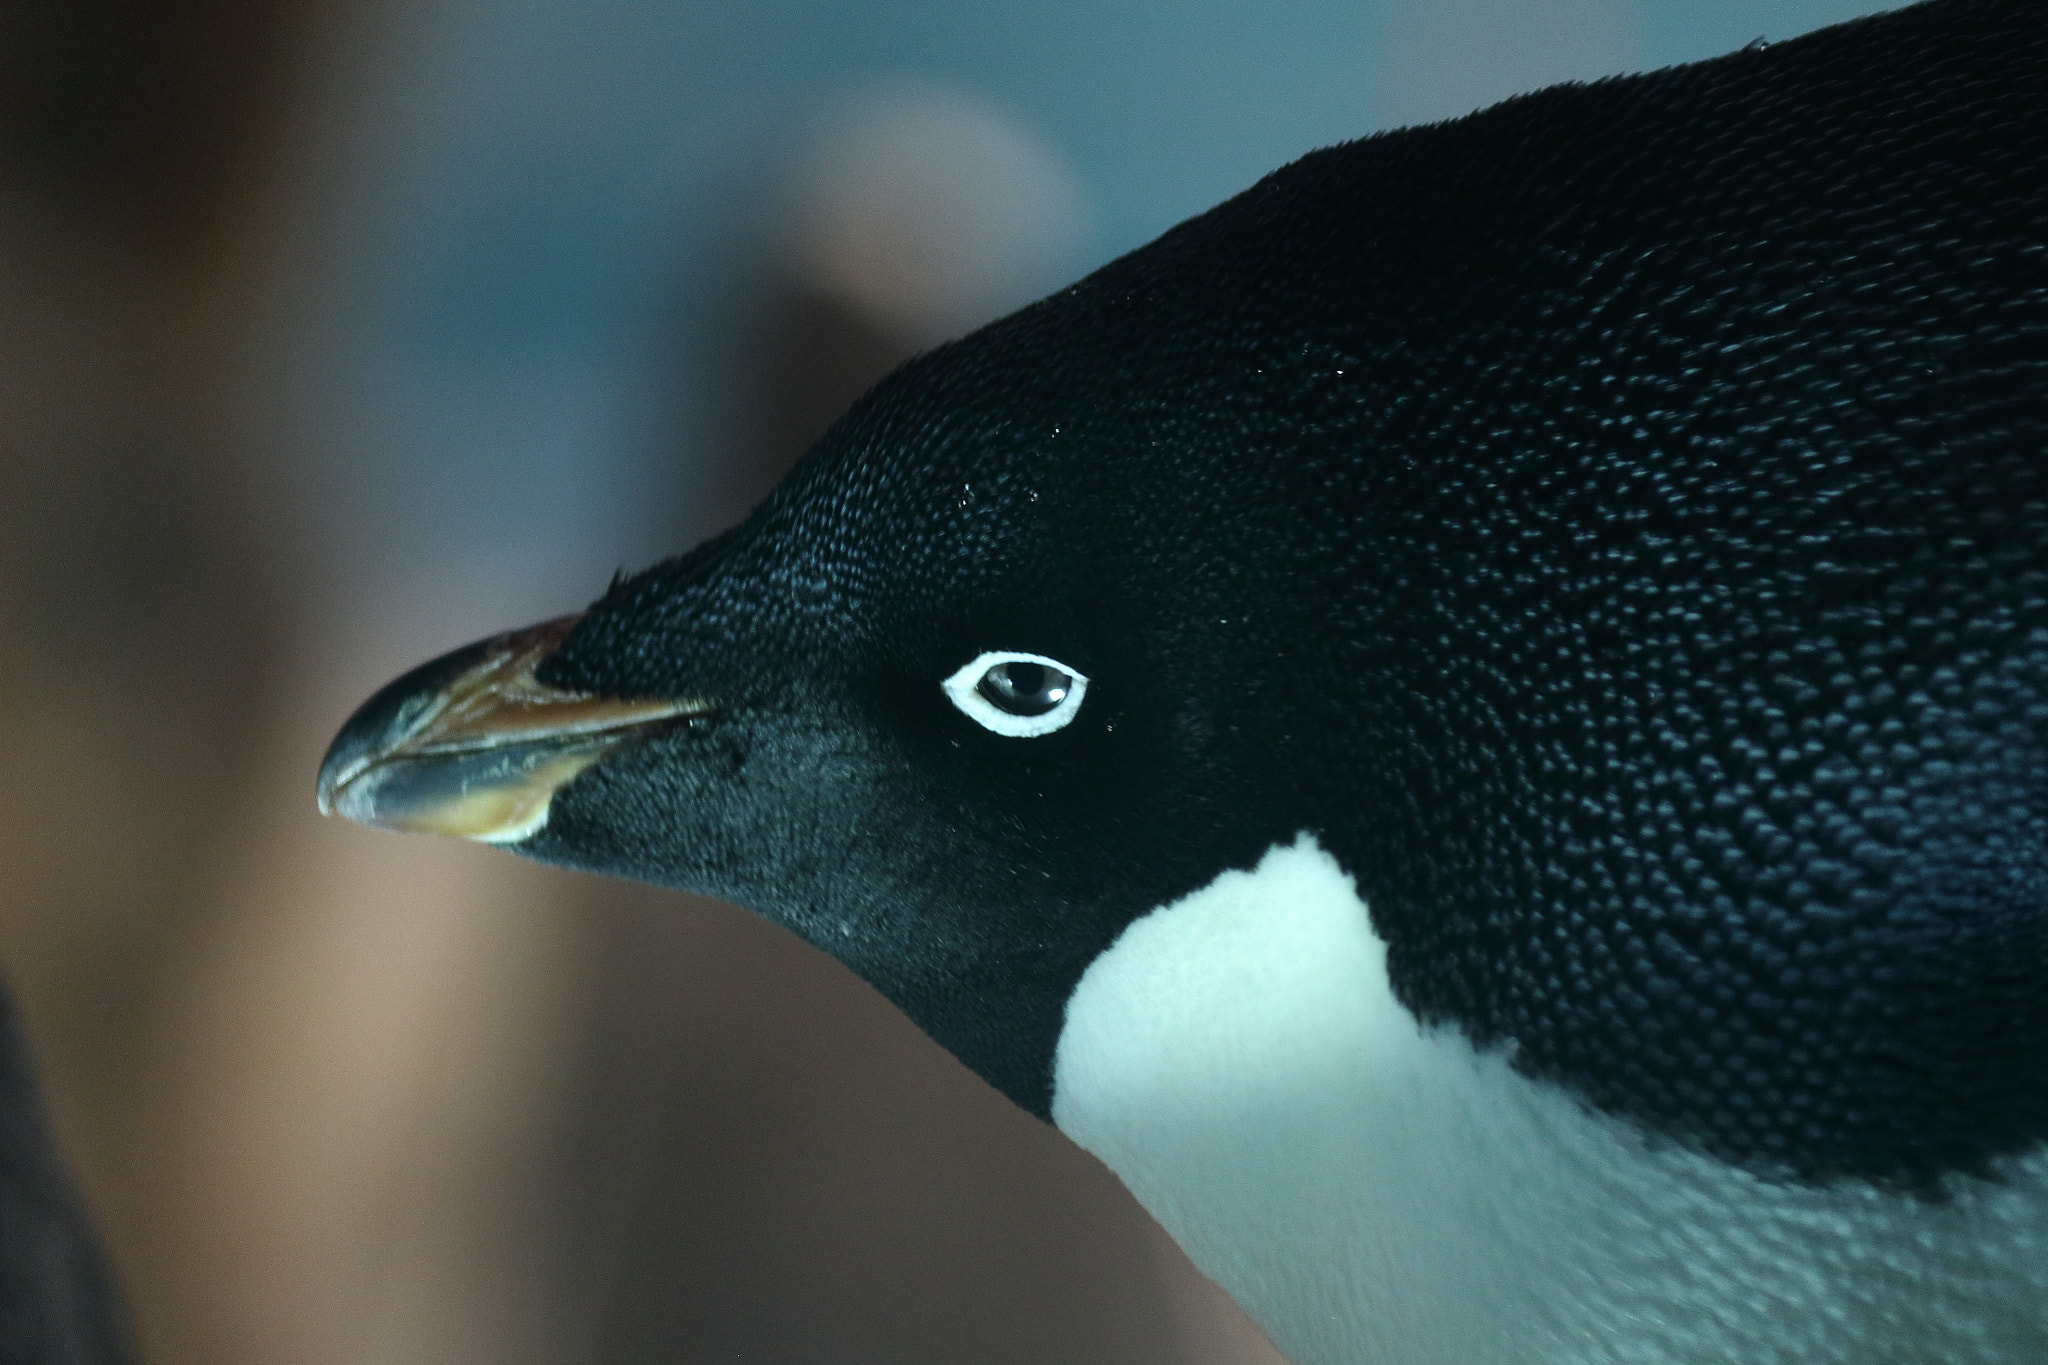 Canon EOS 100D (EOS Rebel SL1 / EOS Kiss X7) sample photo. A penguin photography